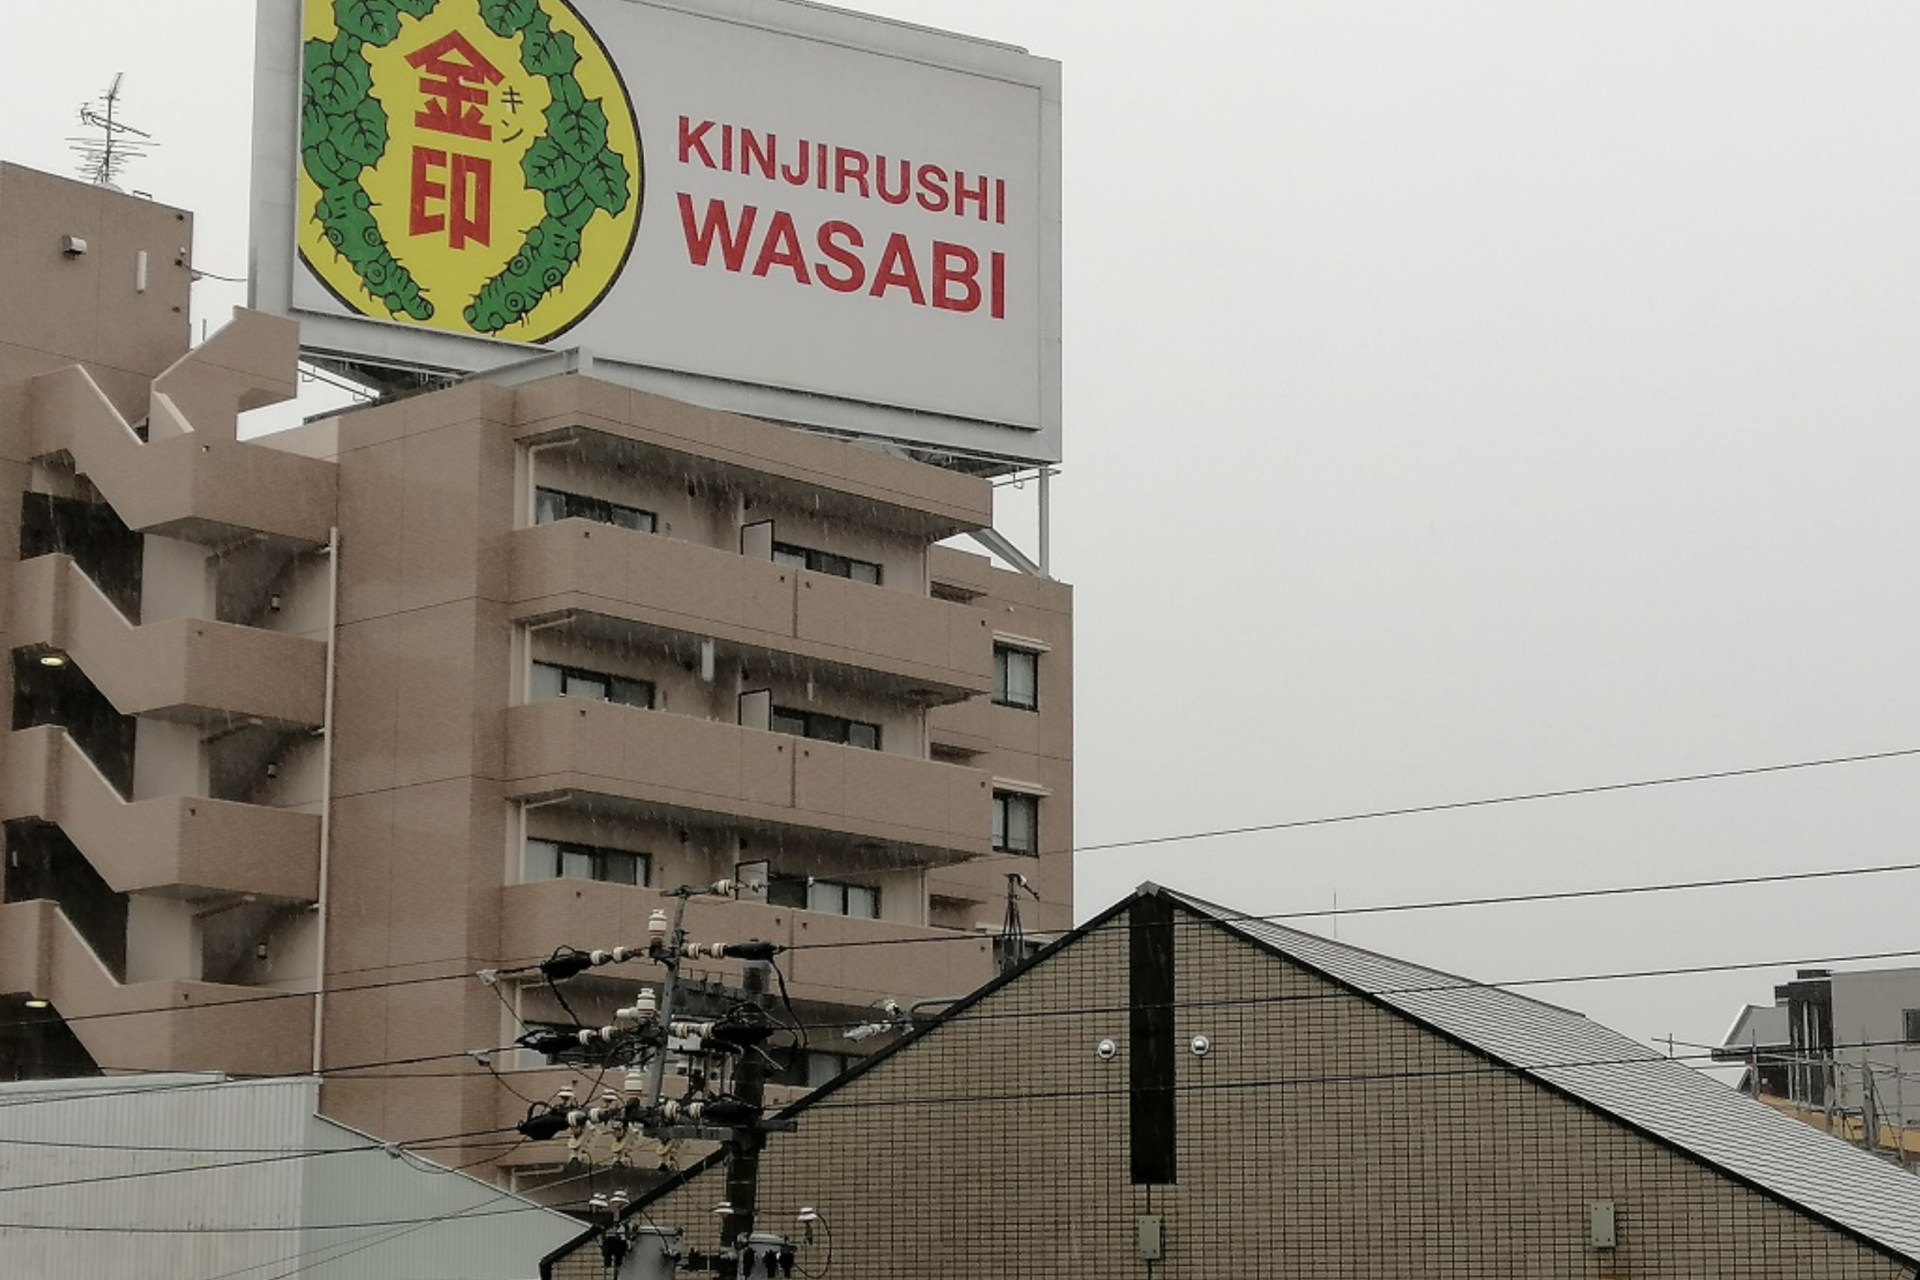 Studio condotto in collaborazione con un produttore di wasabi